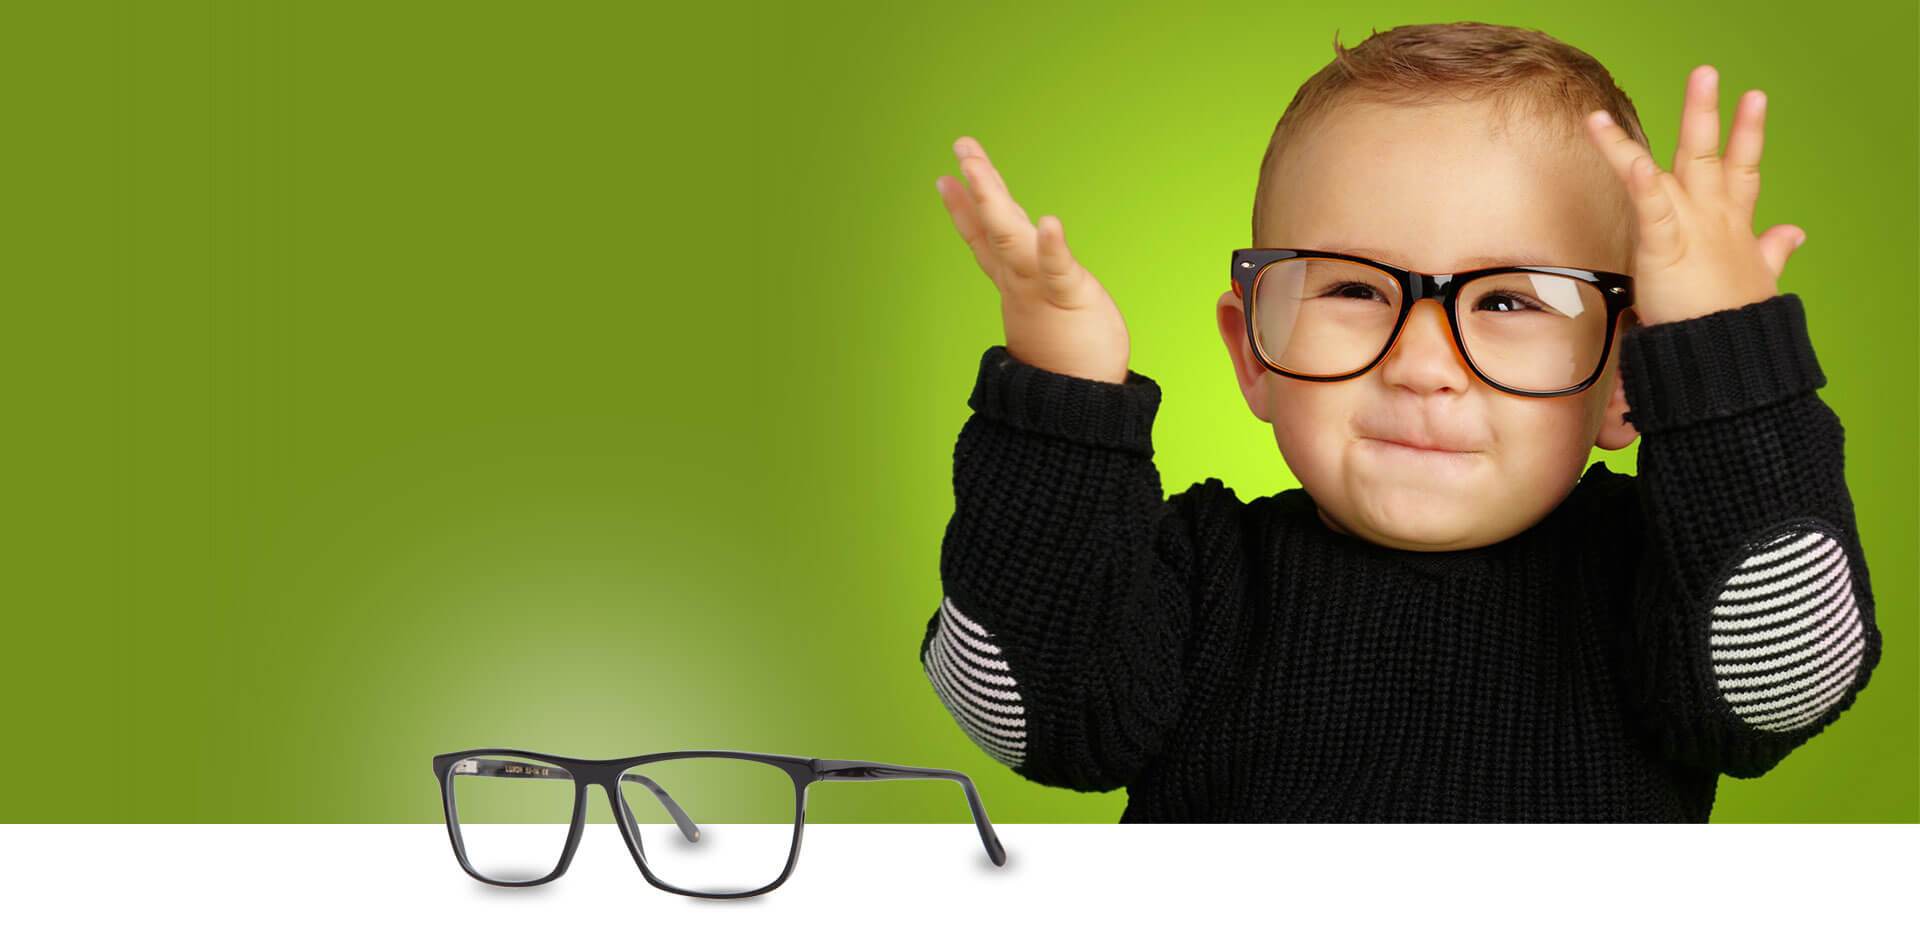 Optométriste pour enfants, adultes et personnes agées.